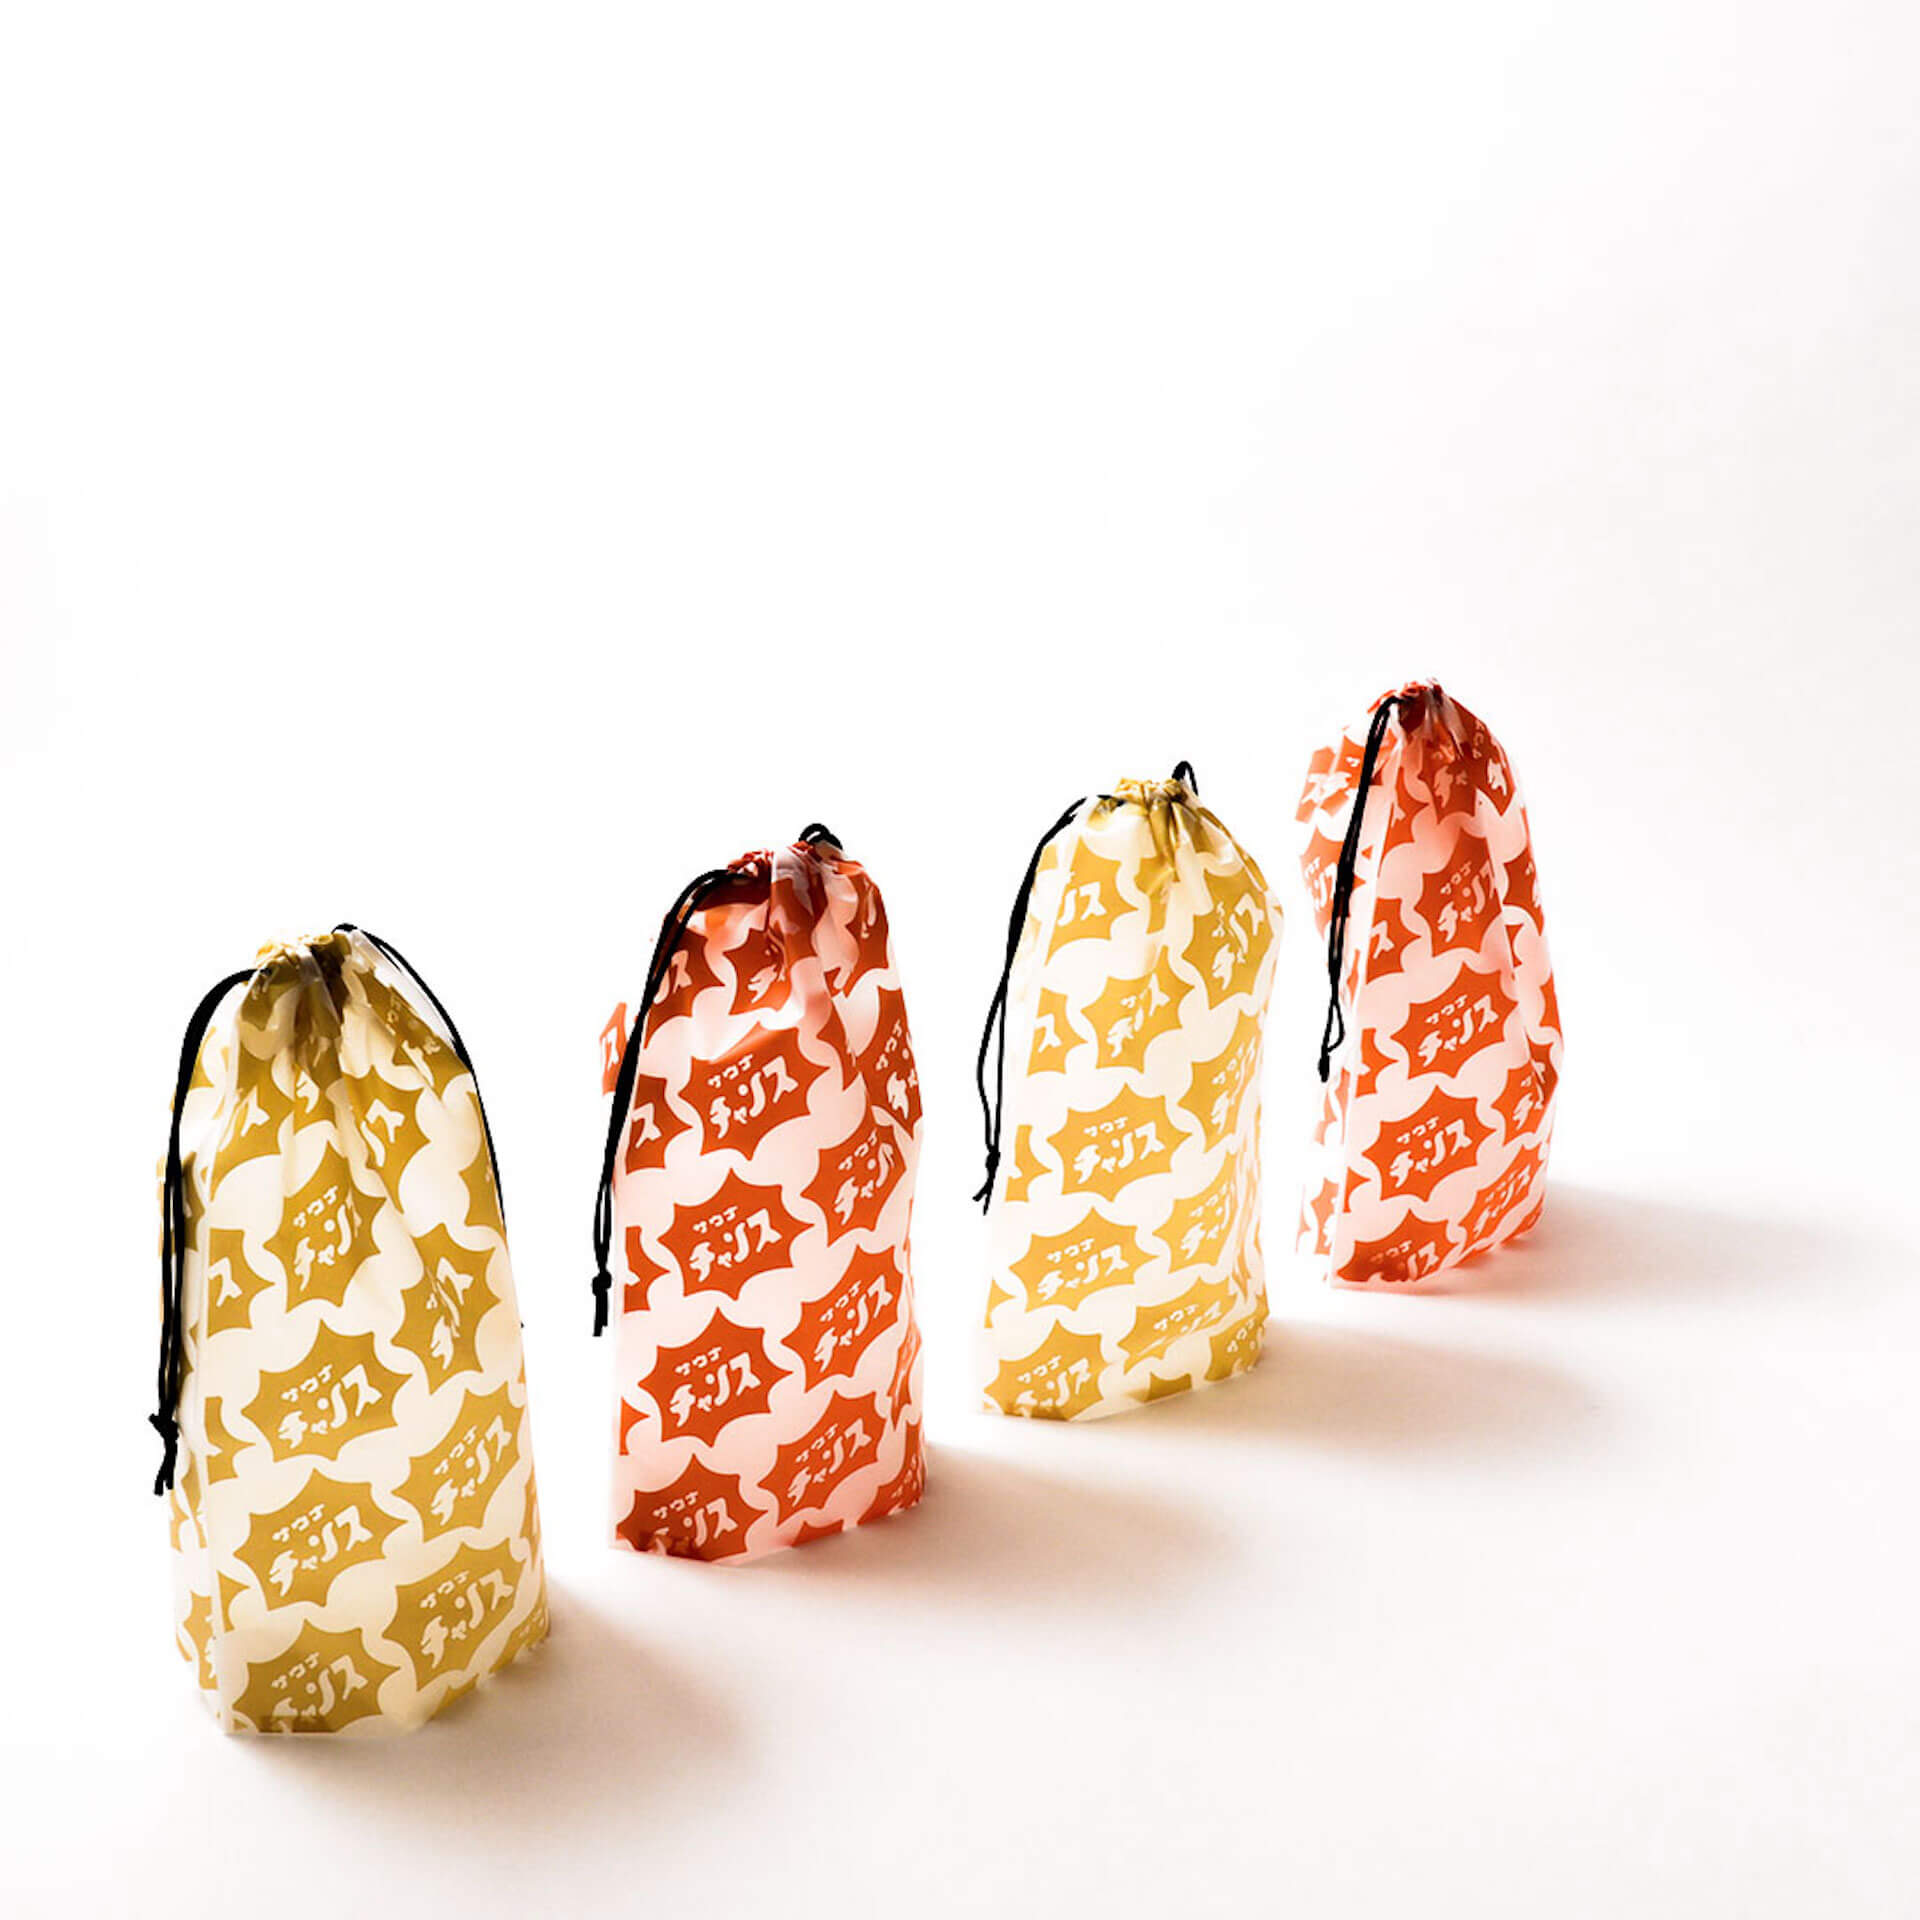 “サウナイキタイ×3COINS”タッグを組んだサウナグッズが発売決定！ fashion221025-sauna-ikitai-010